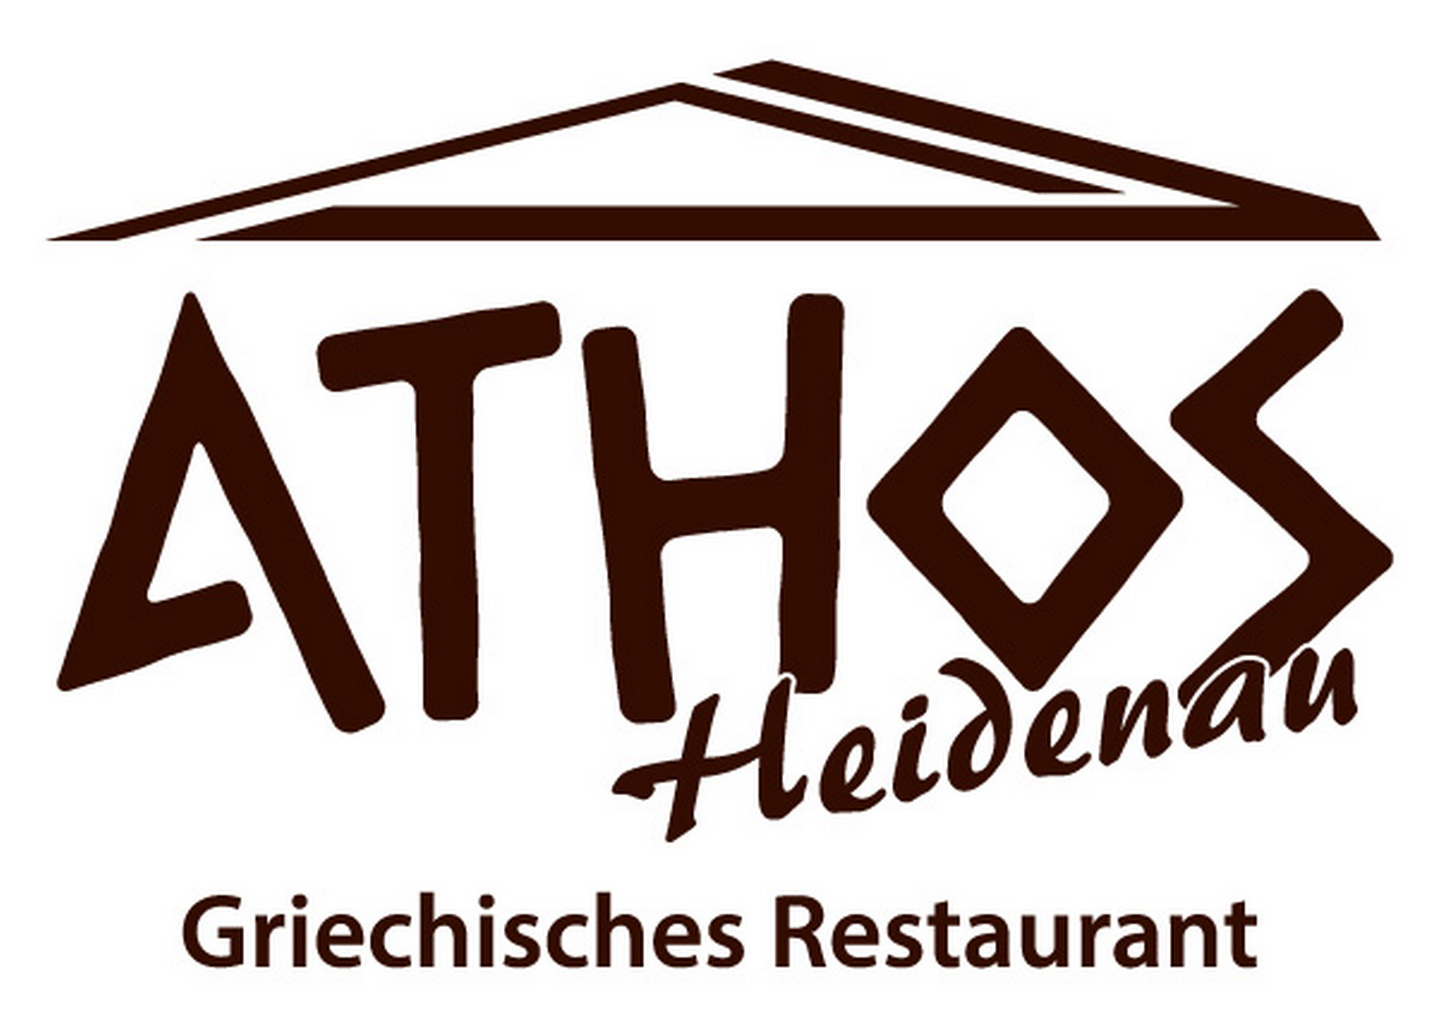 Griechisches Restaurant Athos - Heidenau